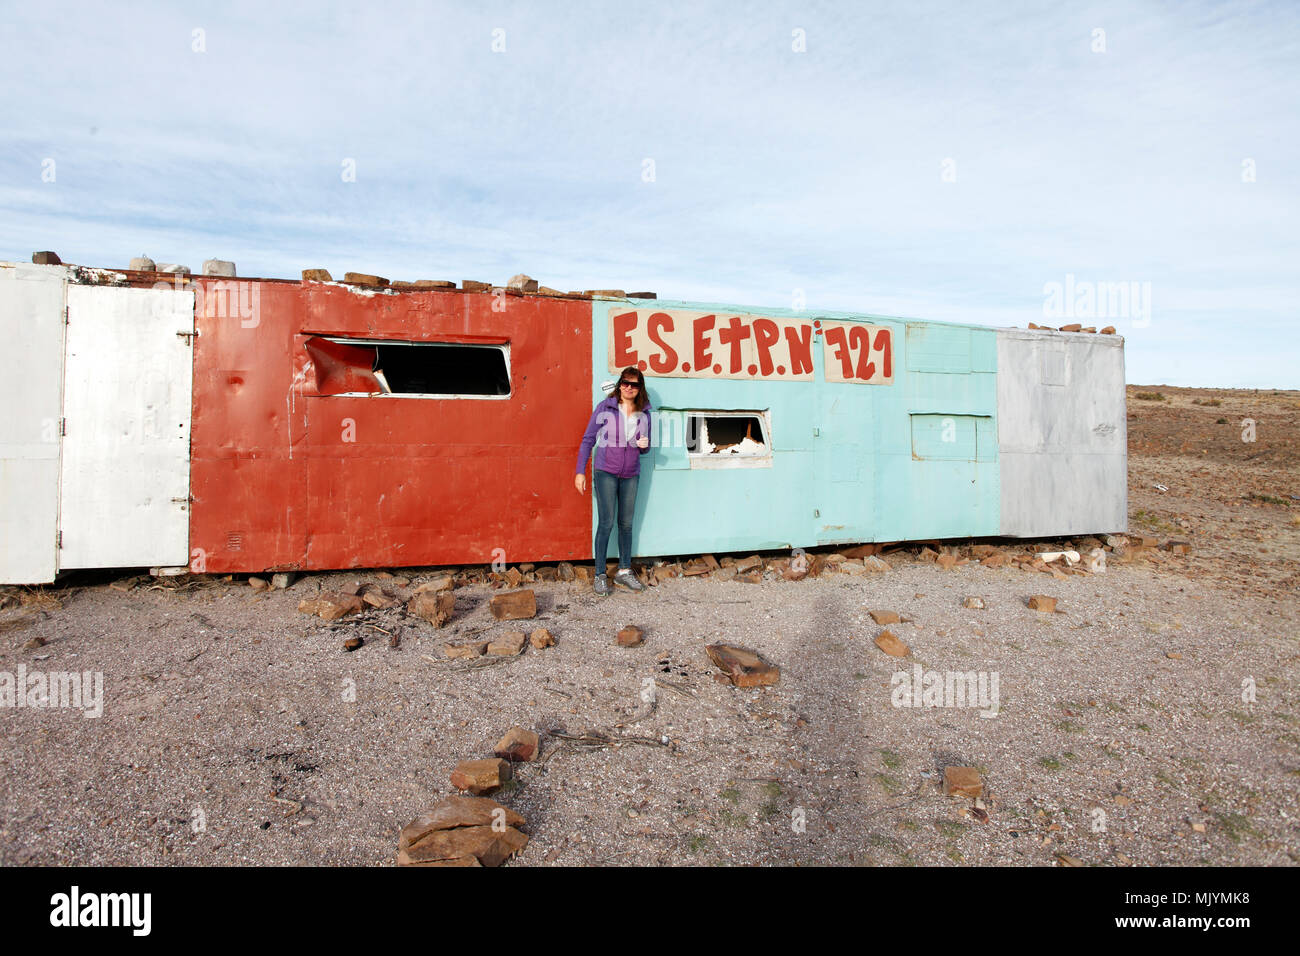 Patagonie, caravane statique utilisé pour l'extérieur des cours liés à l'été pour les enfants des écoles du Colegio 721. Camarones, la Province de Chubut, en Argentine. Banque D'Images